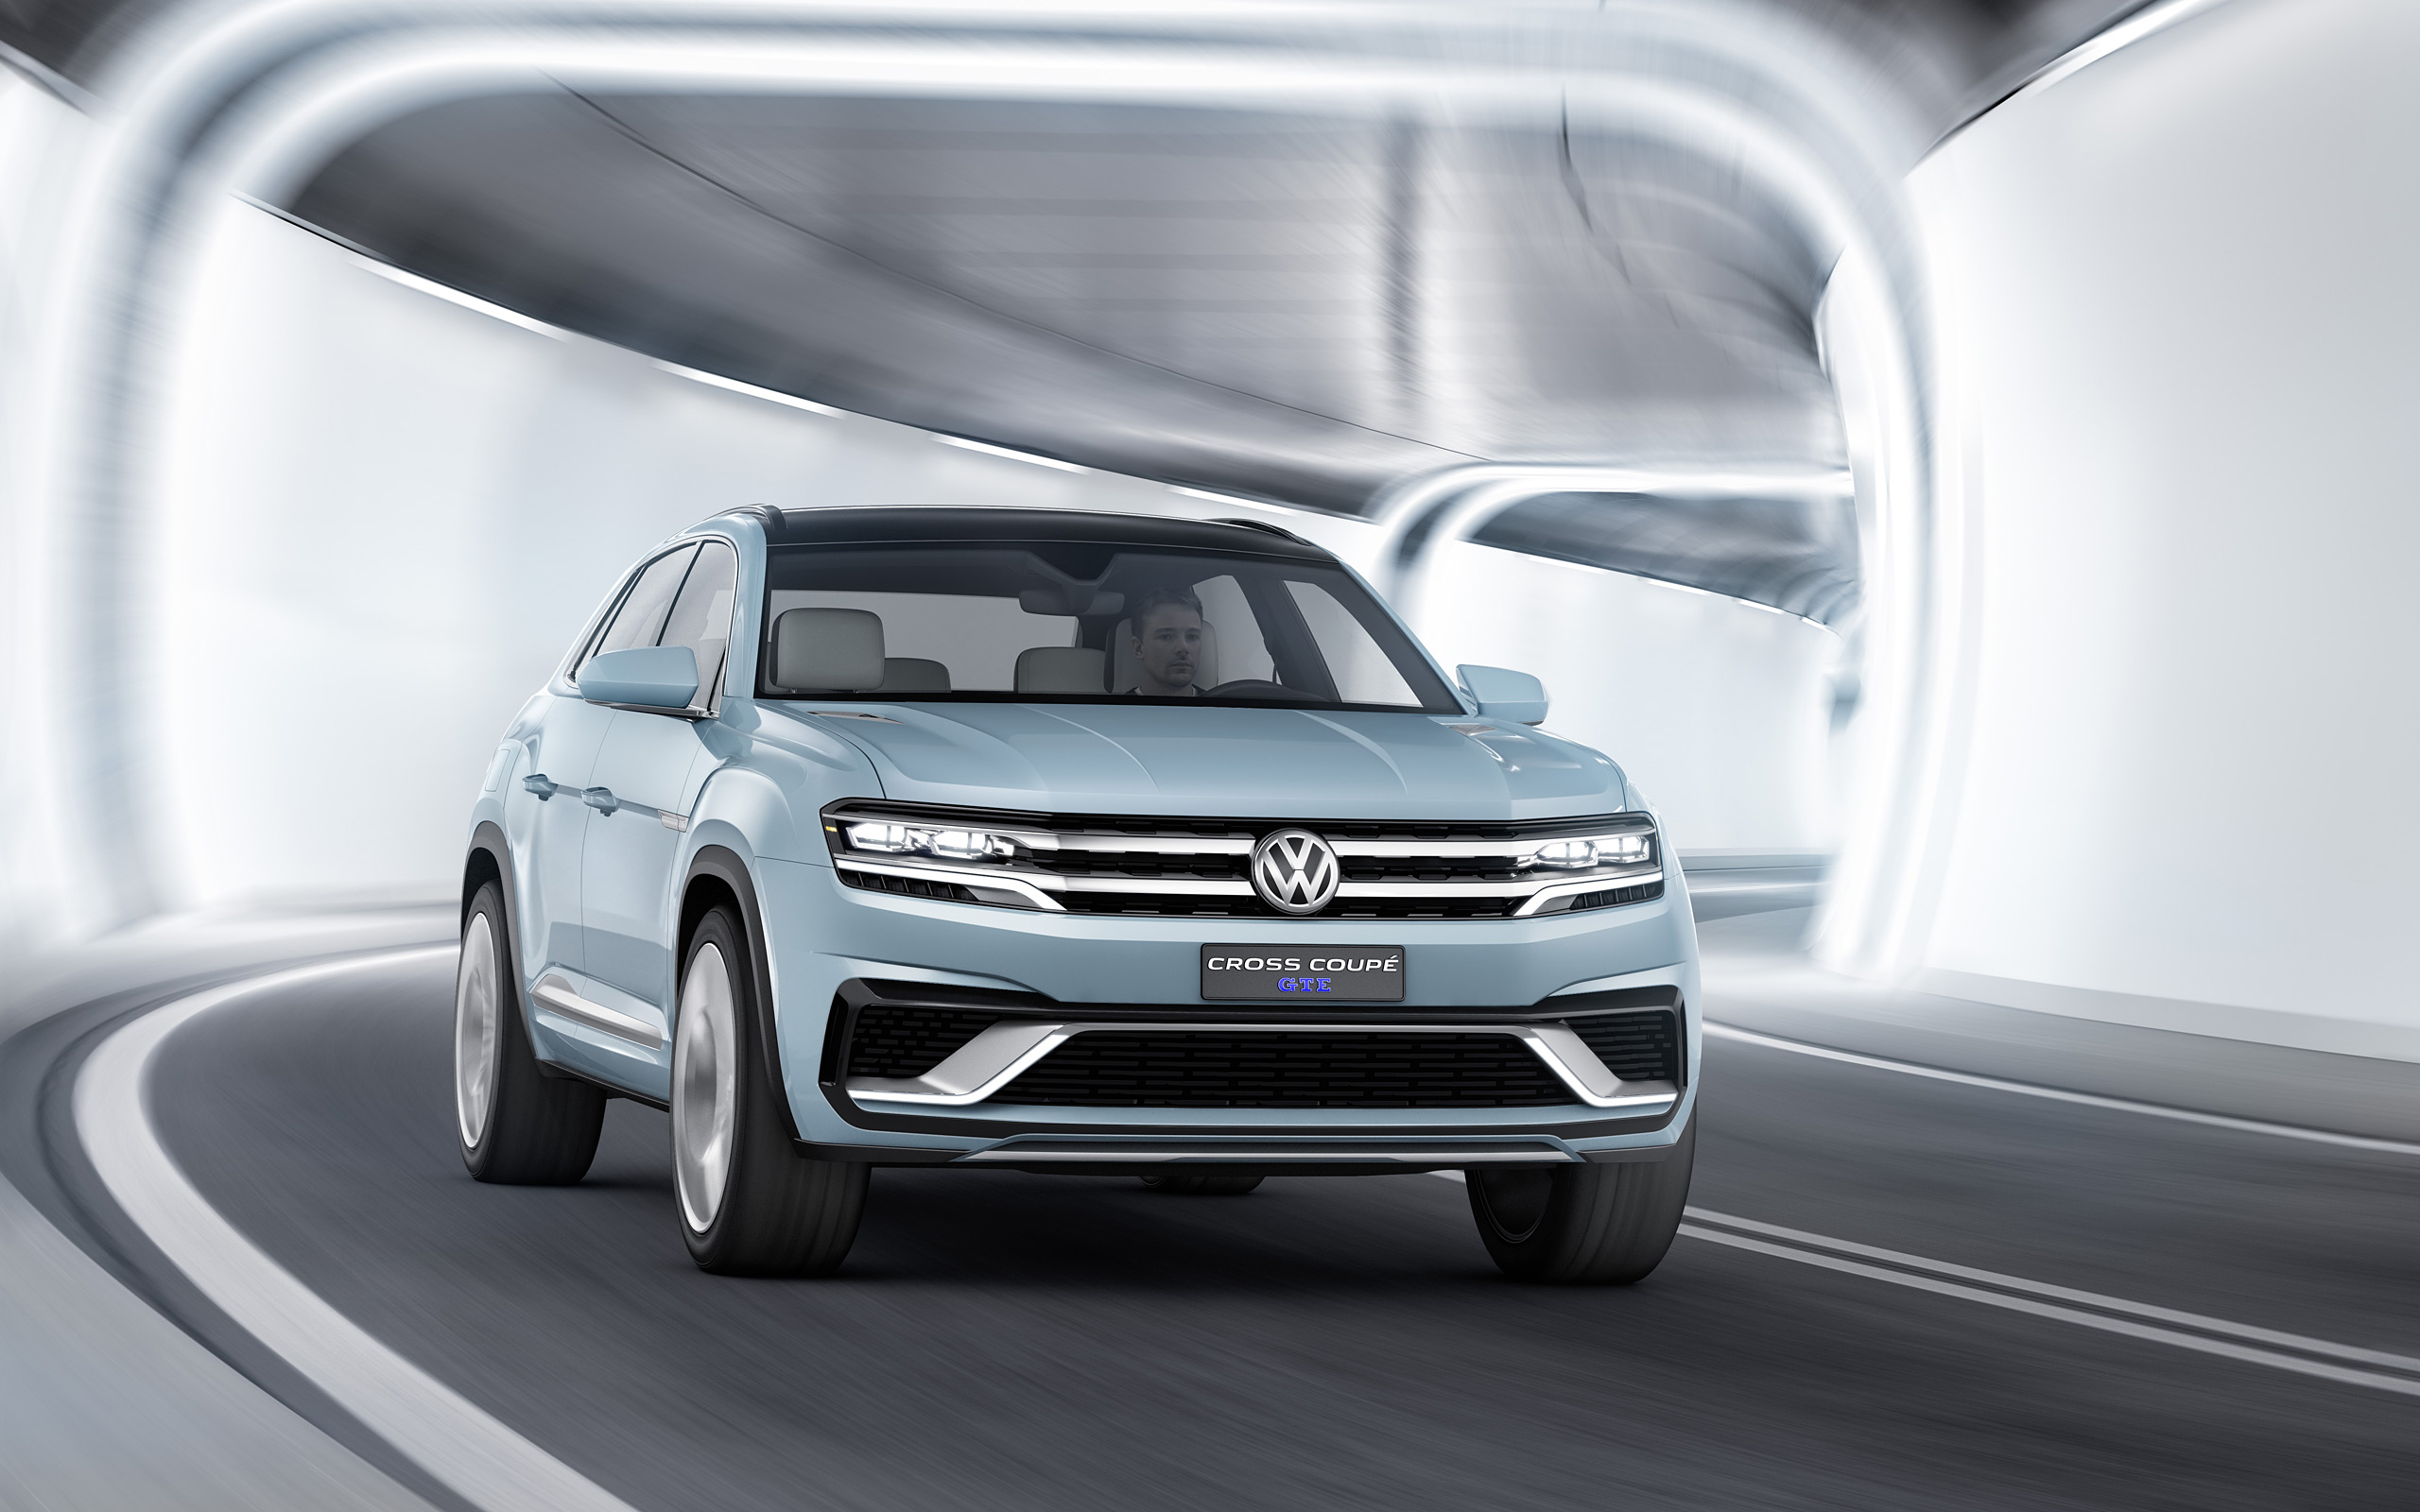  2015 Volkswagen Cross Coupe GTE Concept Wallpaper.